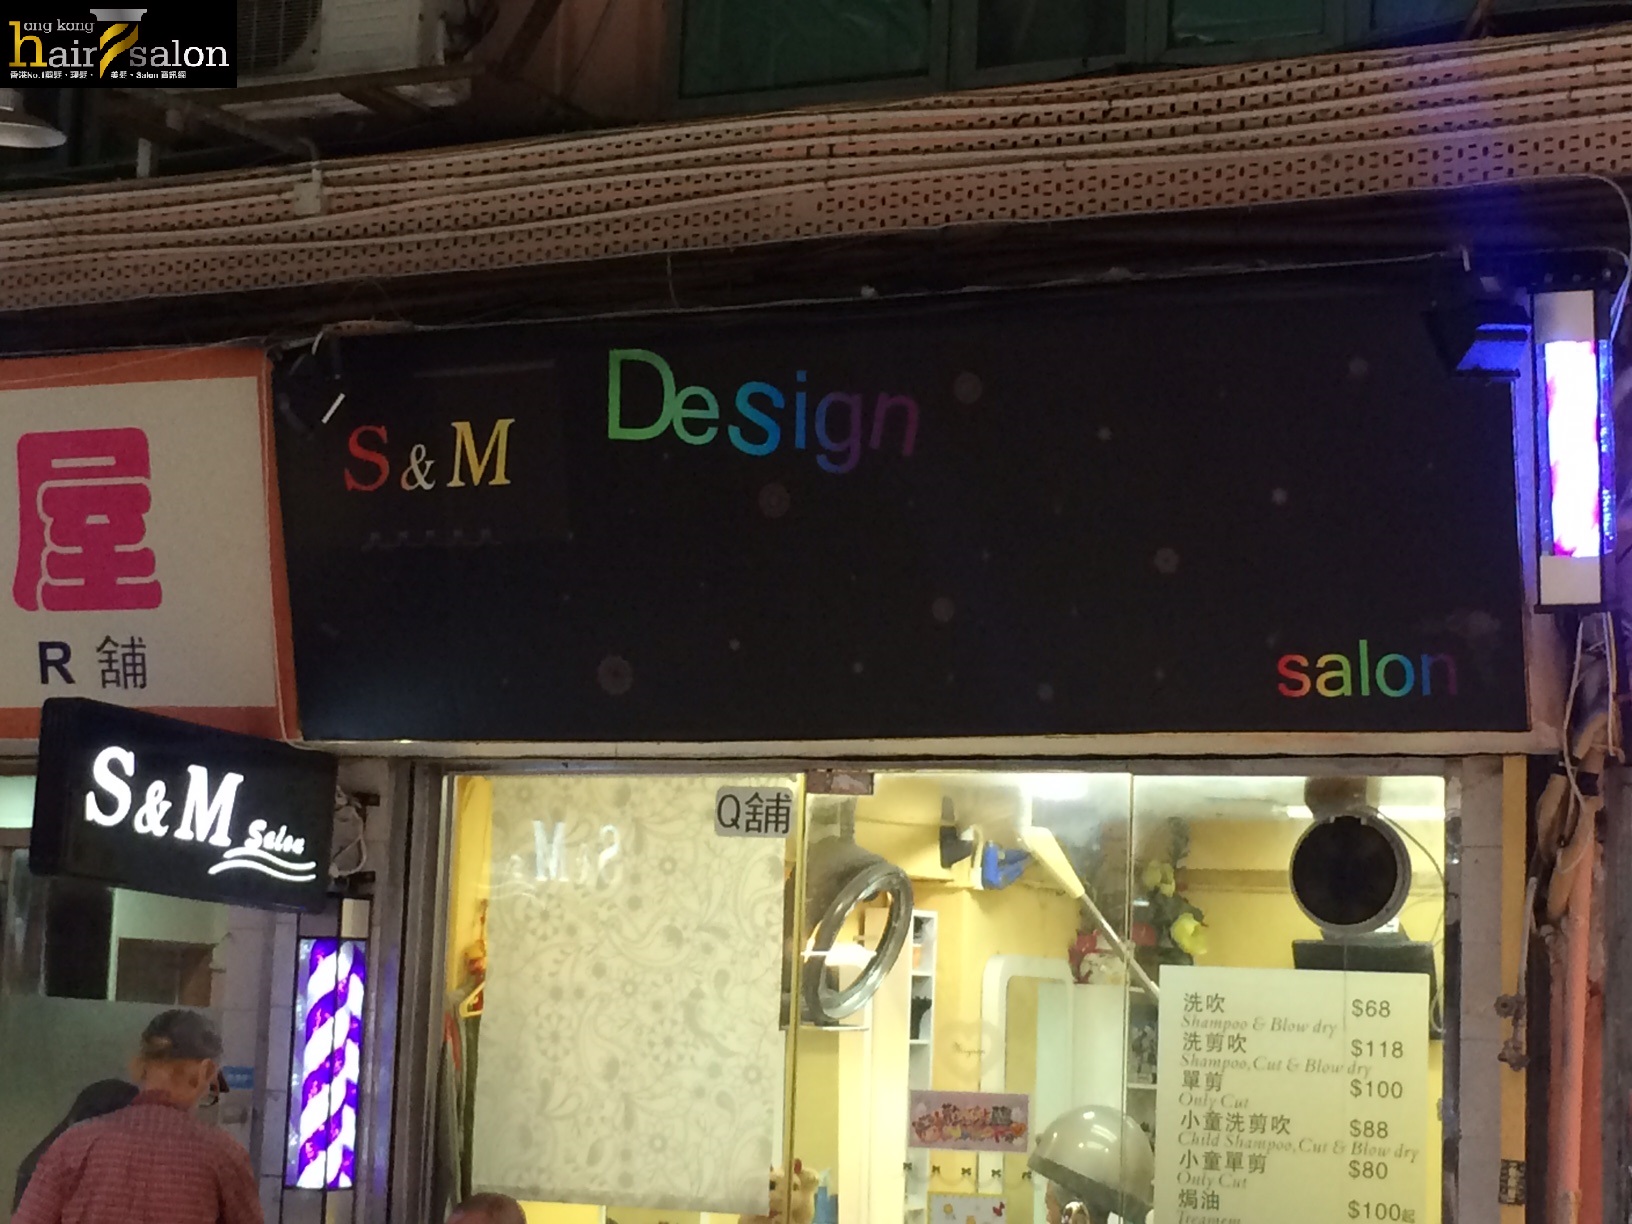 洗剪吹/洗吹造型: S&M Design Salon